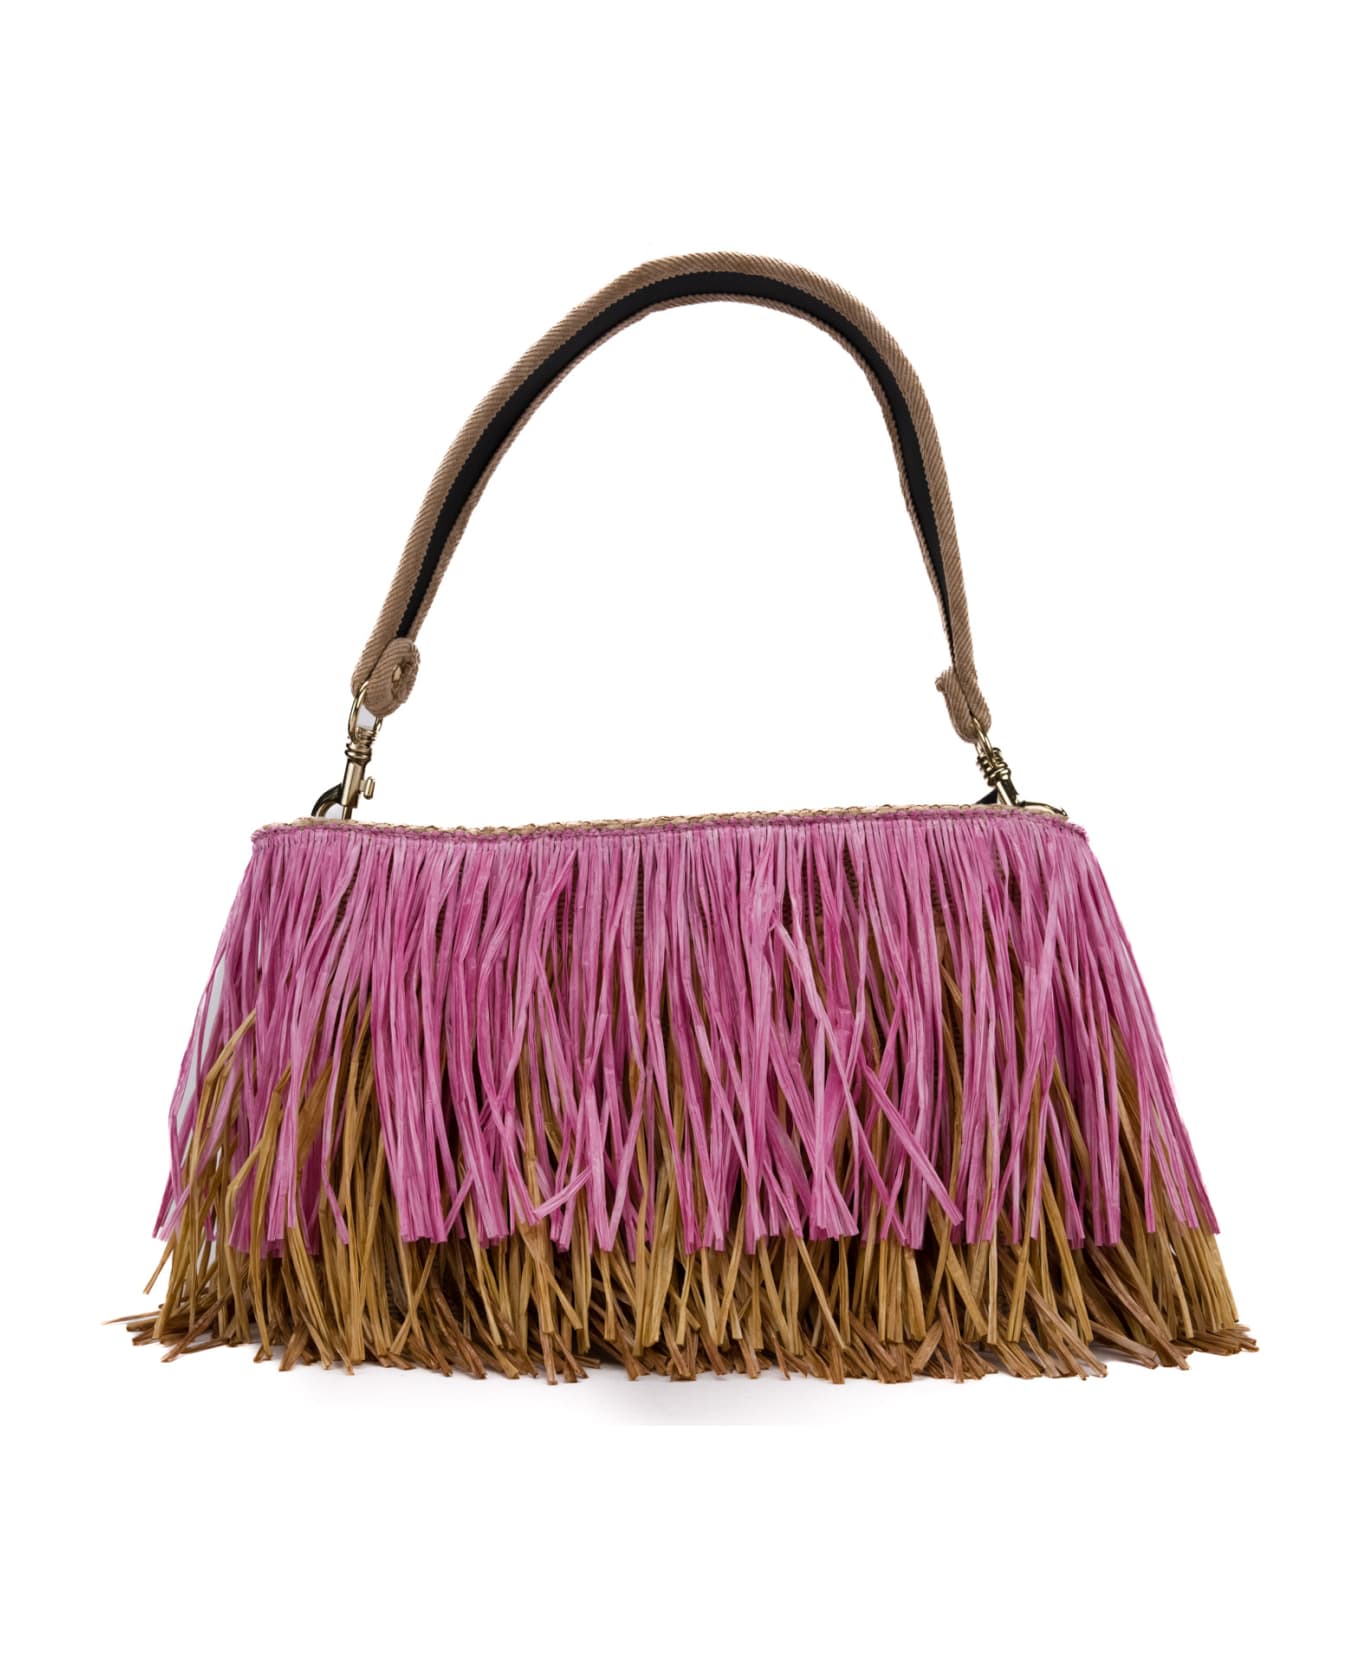 Viamailbag Jasmine Fringe Bag - Pink/natural